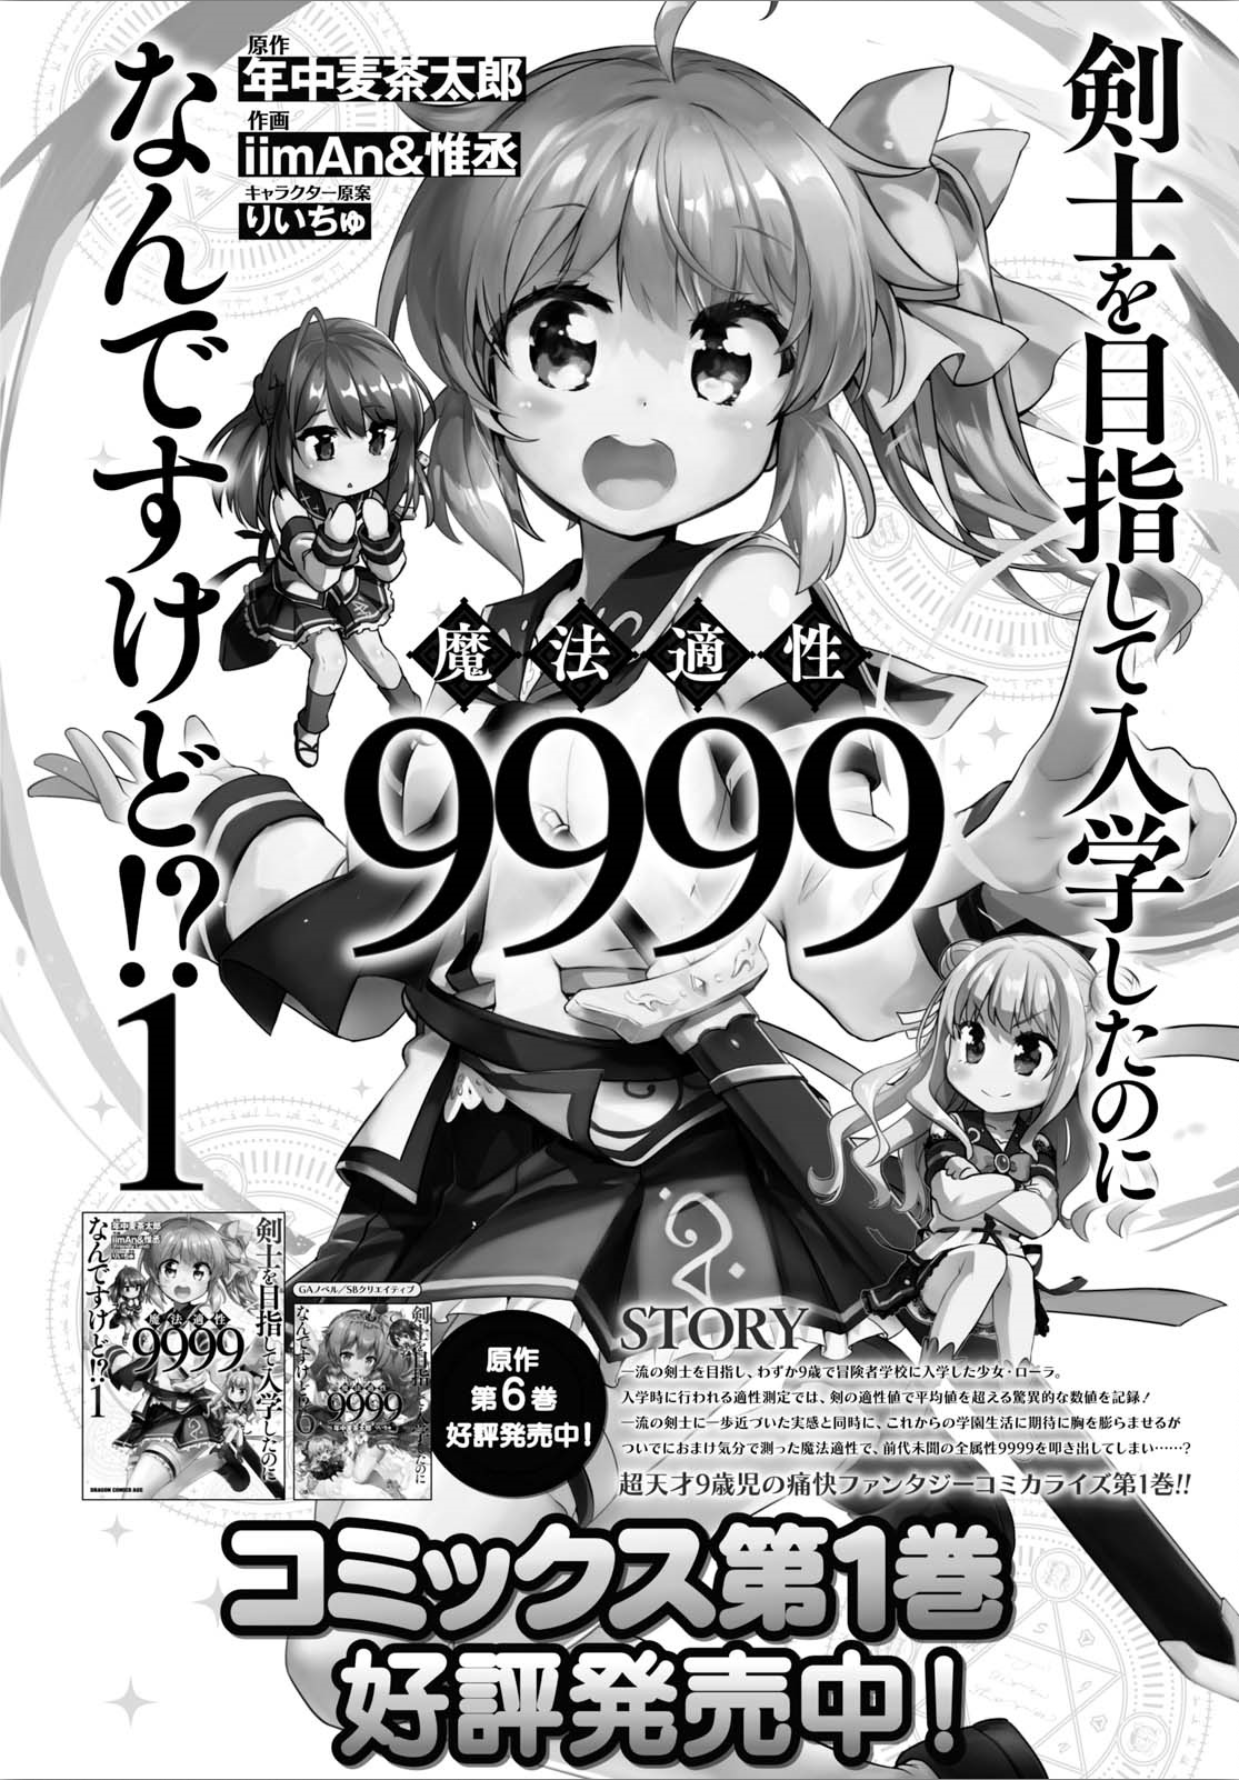 Kenshi O Mezashite Nyugaku Shitanoni Maho Tekisei 9999 Nandesukedo!? Vol.2 Chapter 9: The Final! - Picture 2